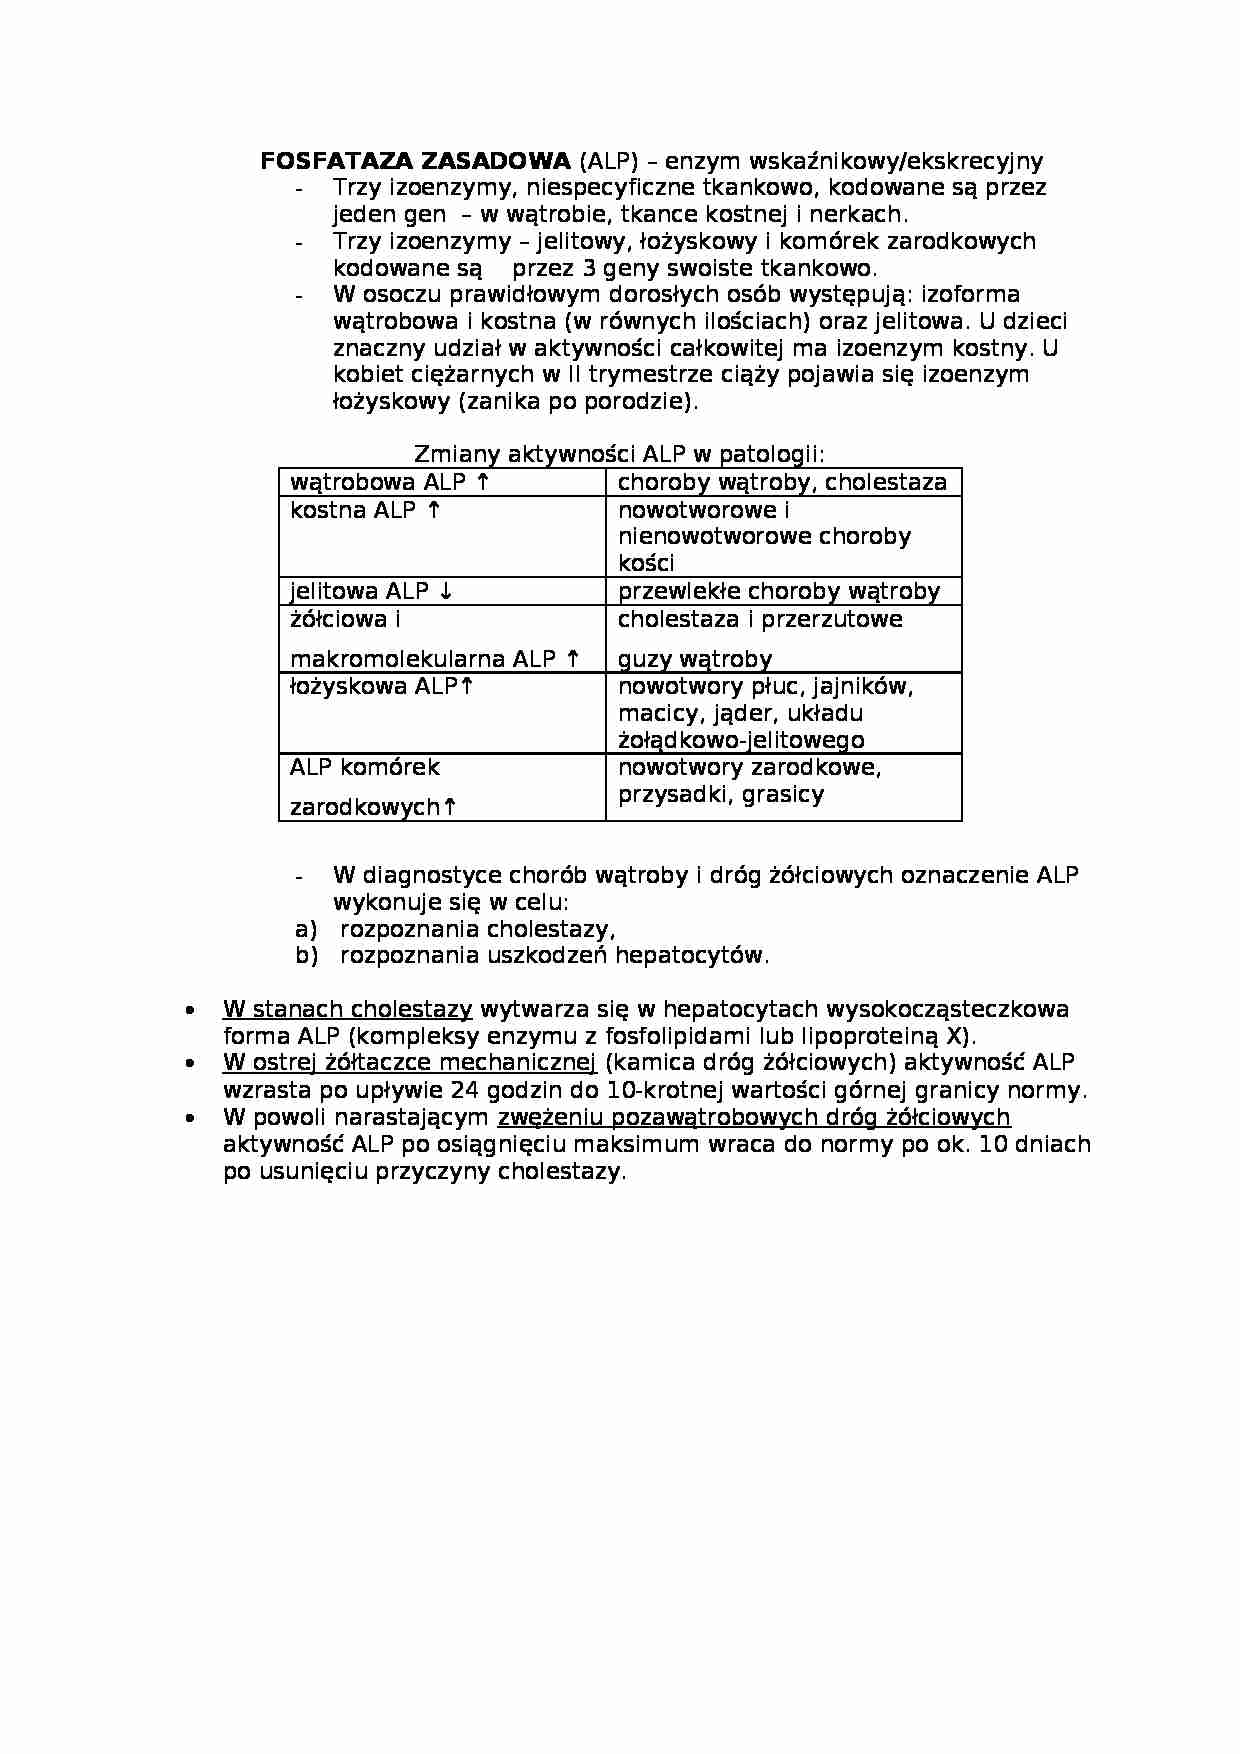 Wykład - fosfataza zasadowa - strona 1